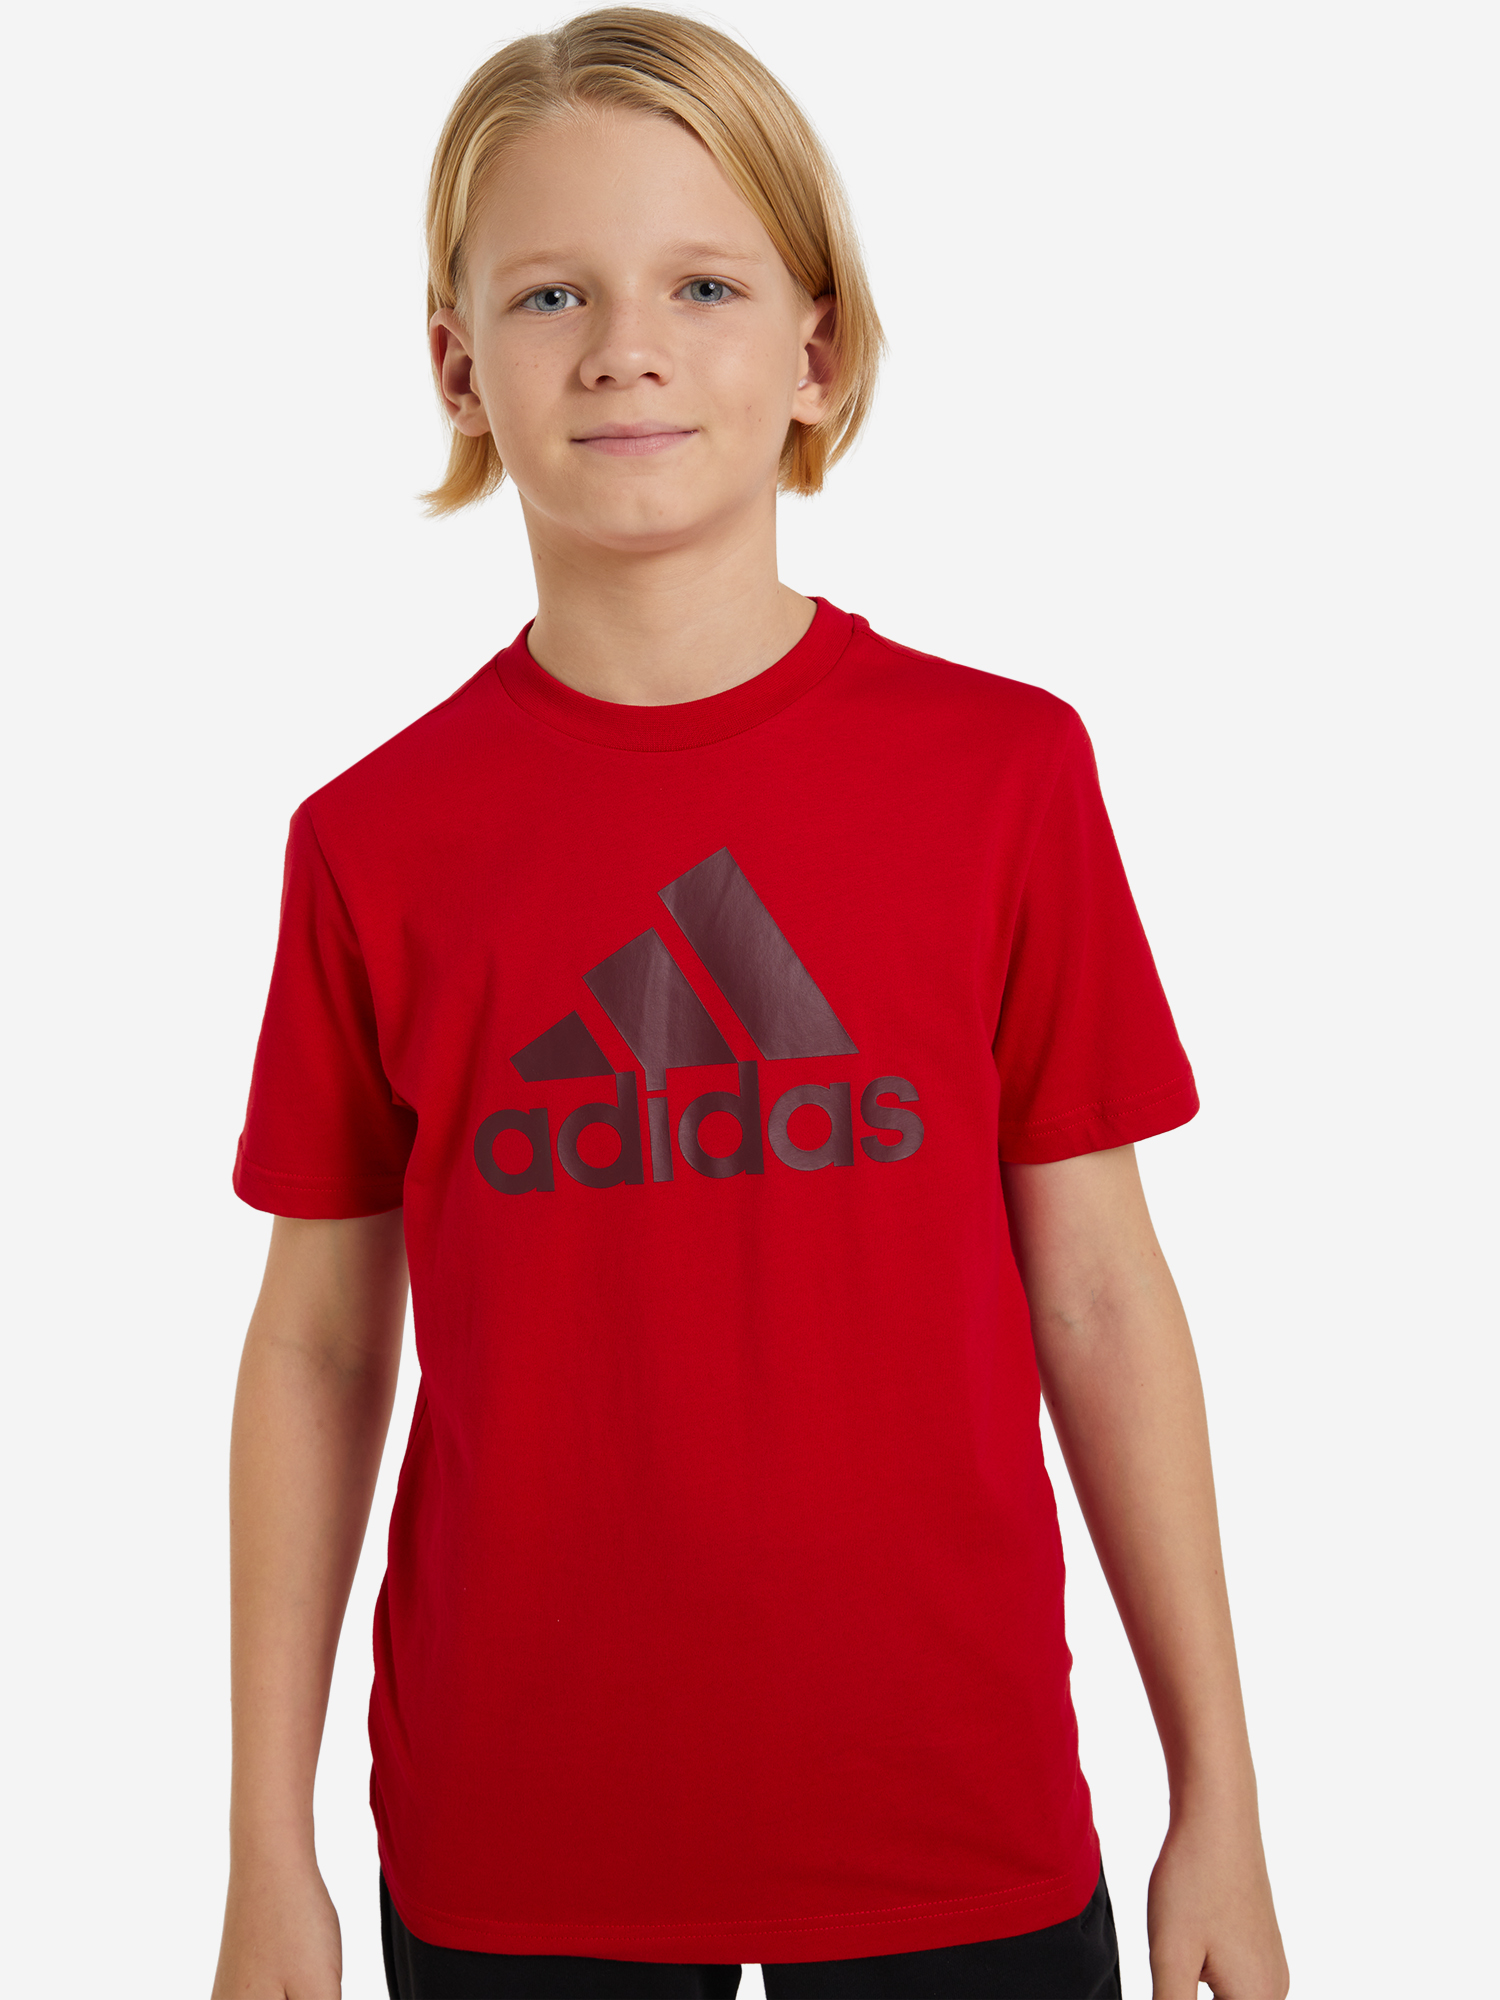 Футболка для мальчиков adidas, Красный футболка мужская adidas красный